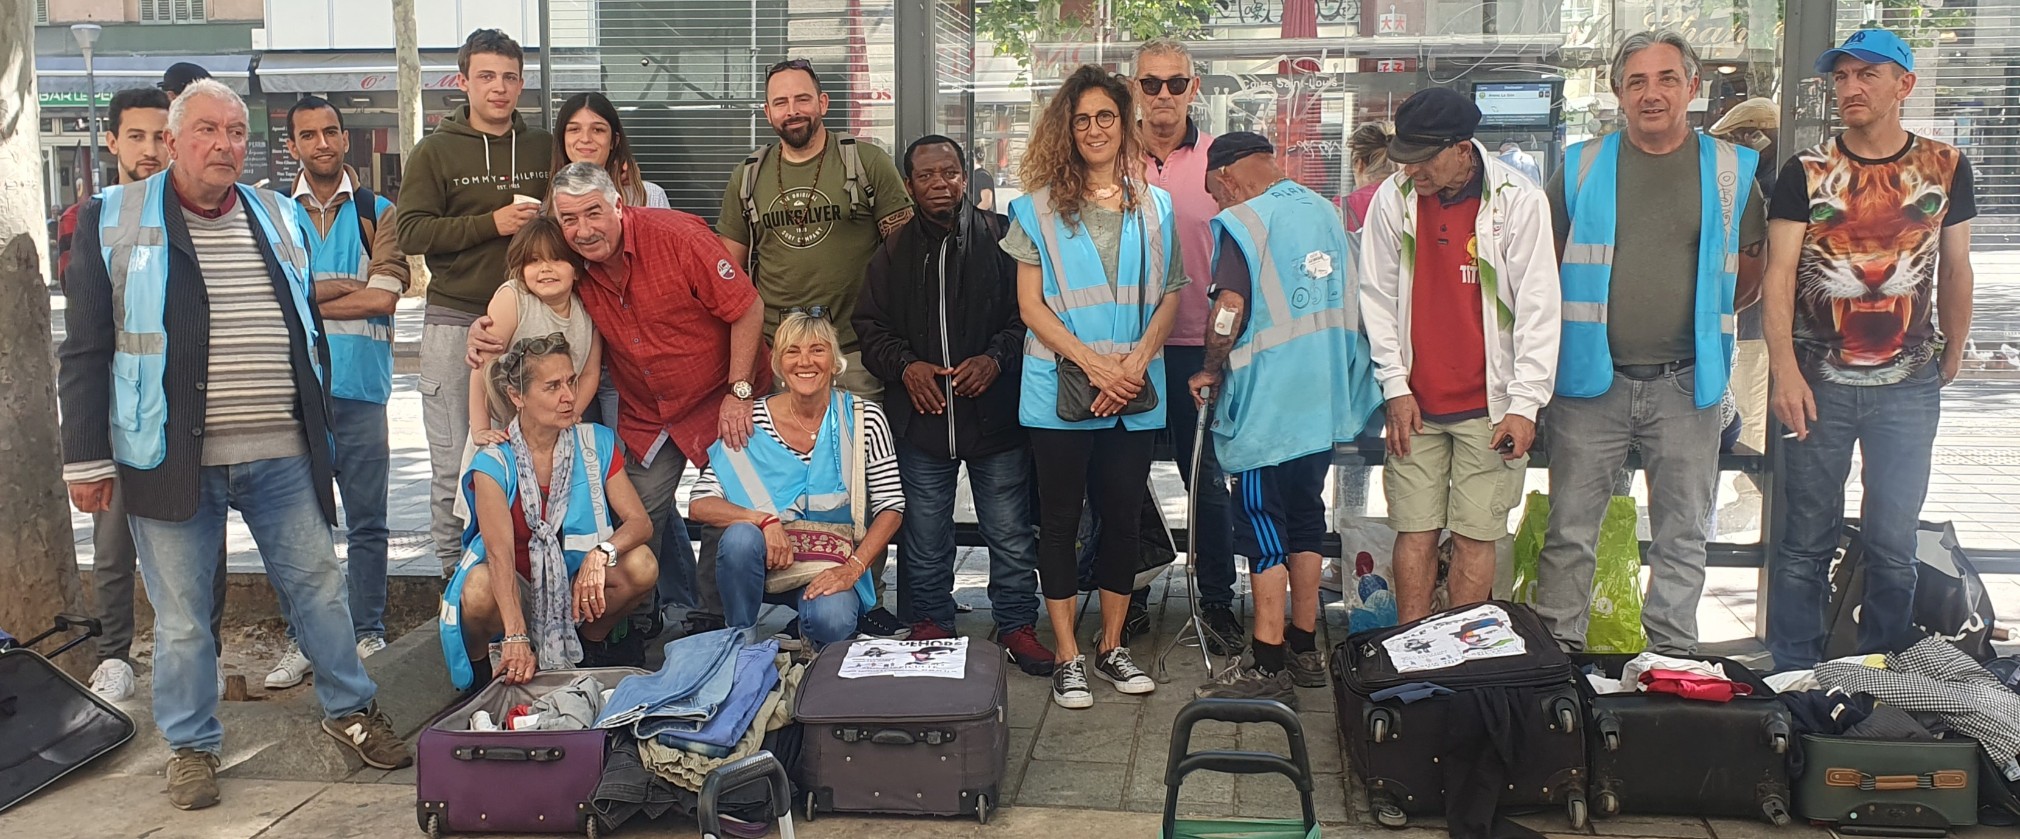 On Se Gèle Dehors : une association qui va à la rencontre des marseillais sans-abris et défavorisés